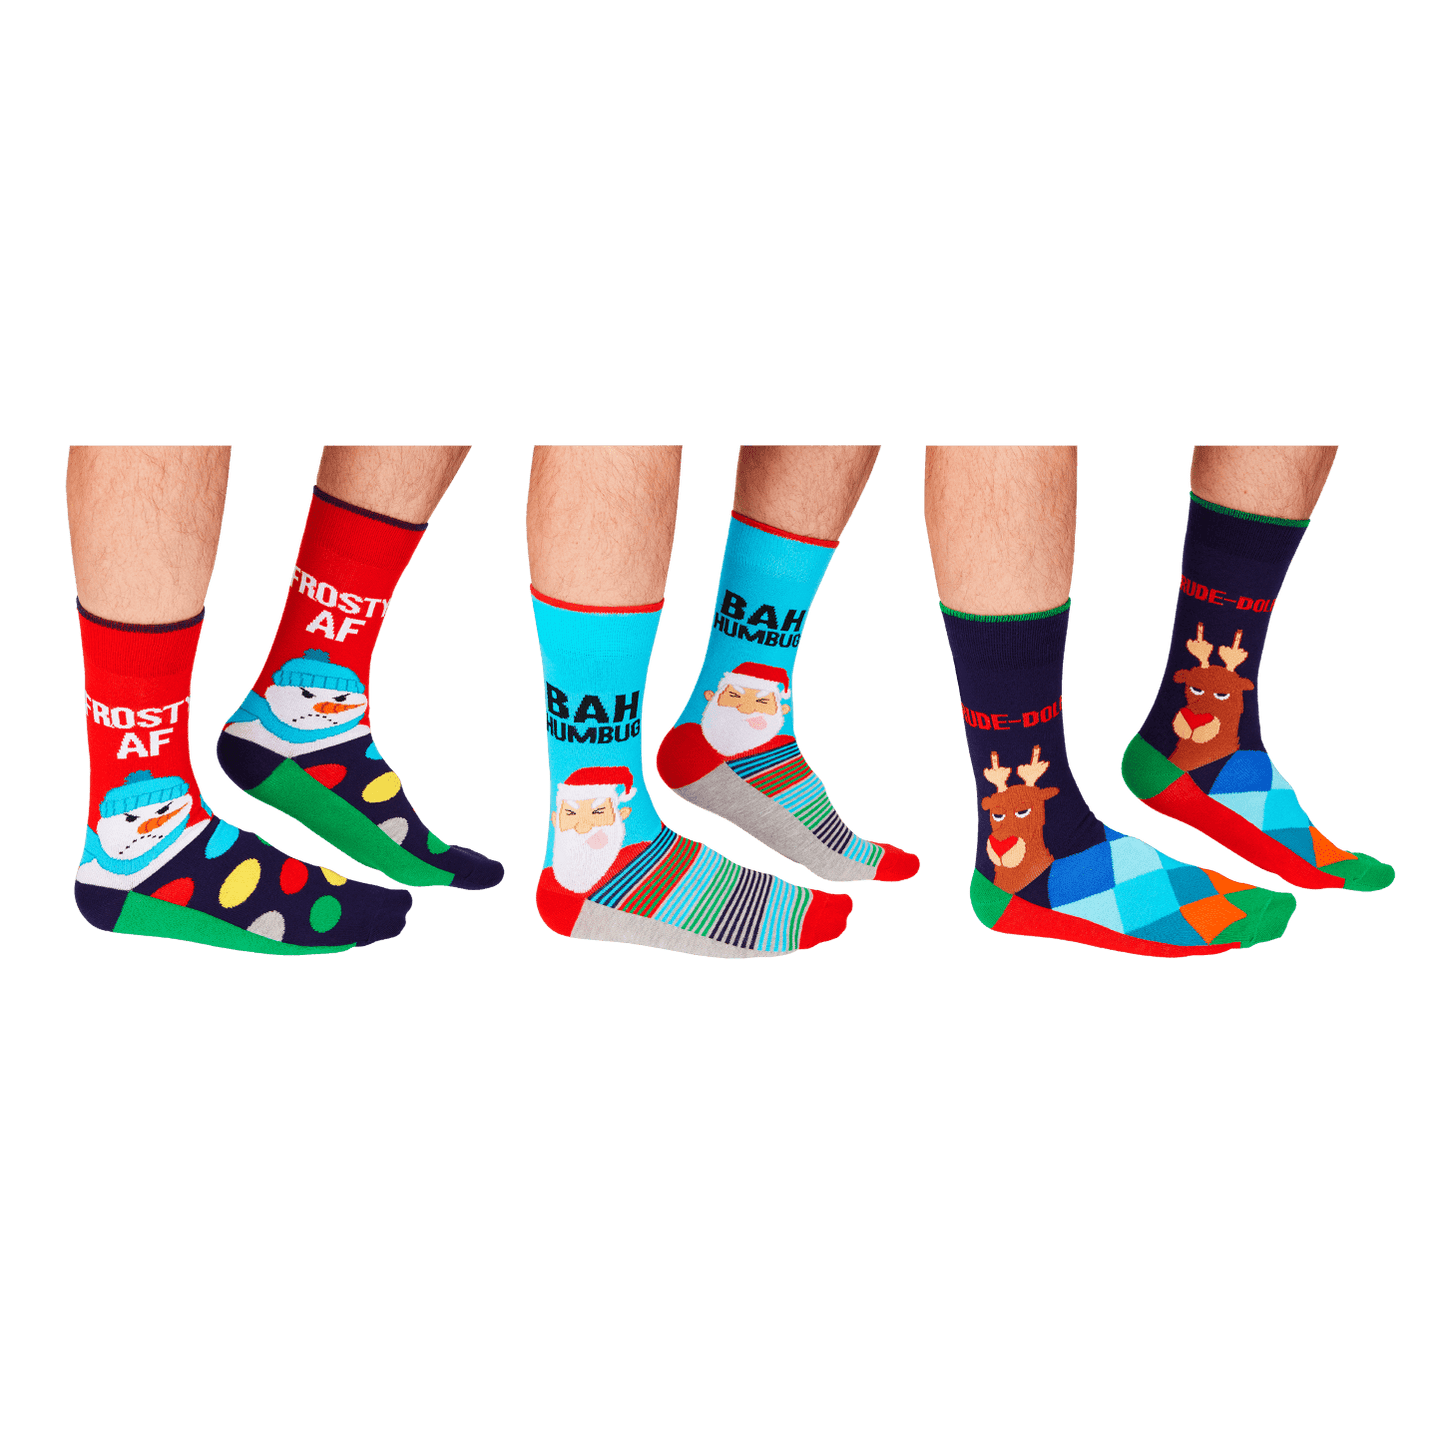 Cockney Spaniel - BAH HUMBUG Christmas Socks